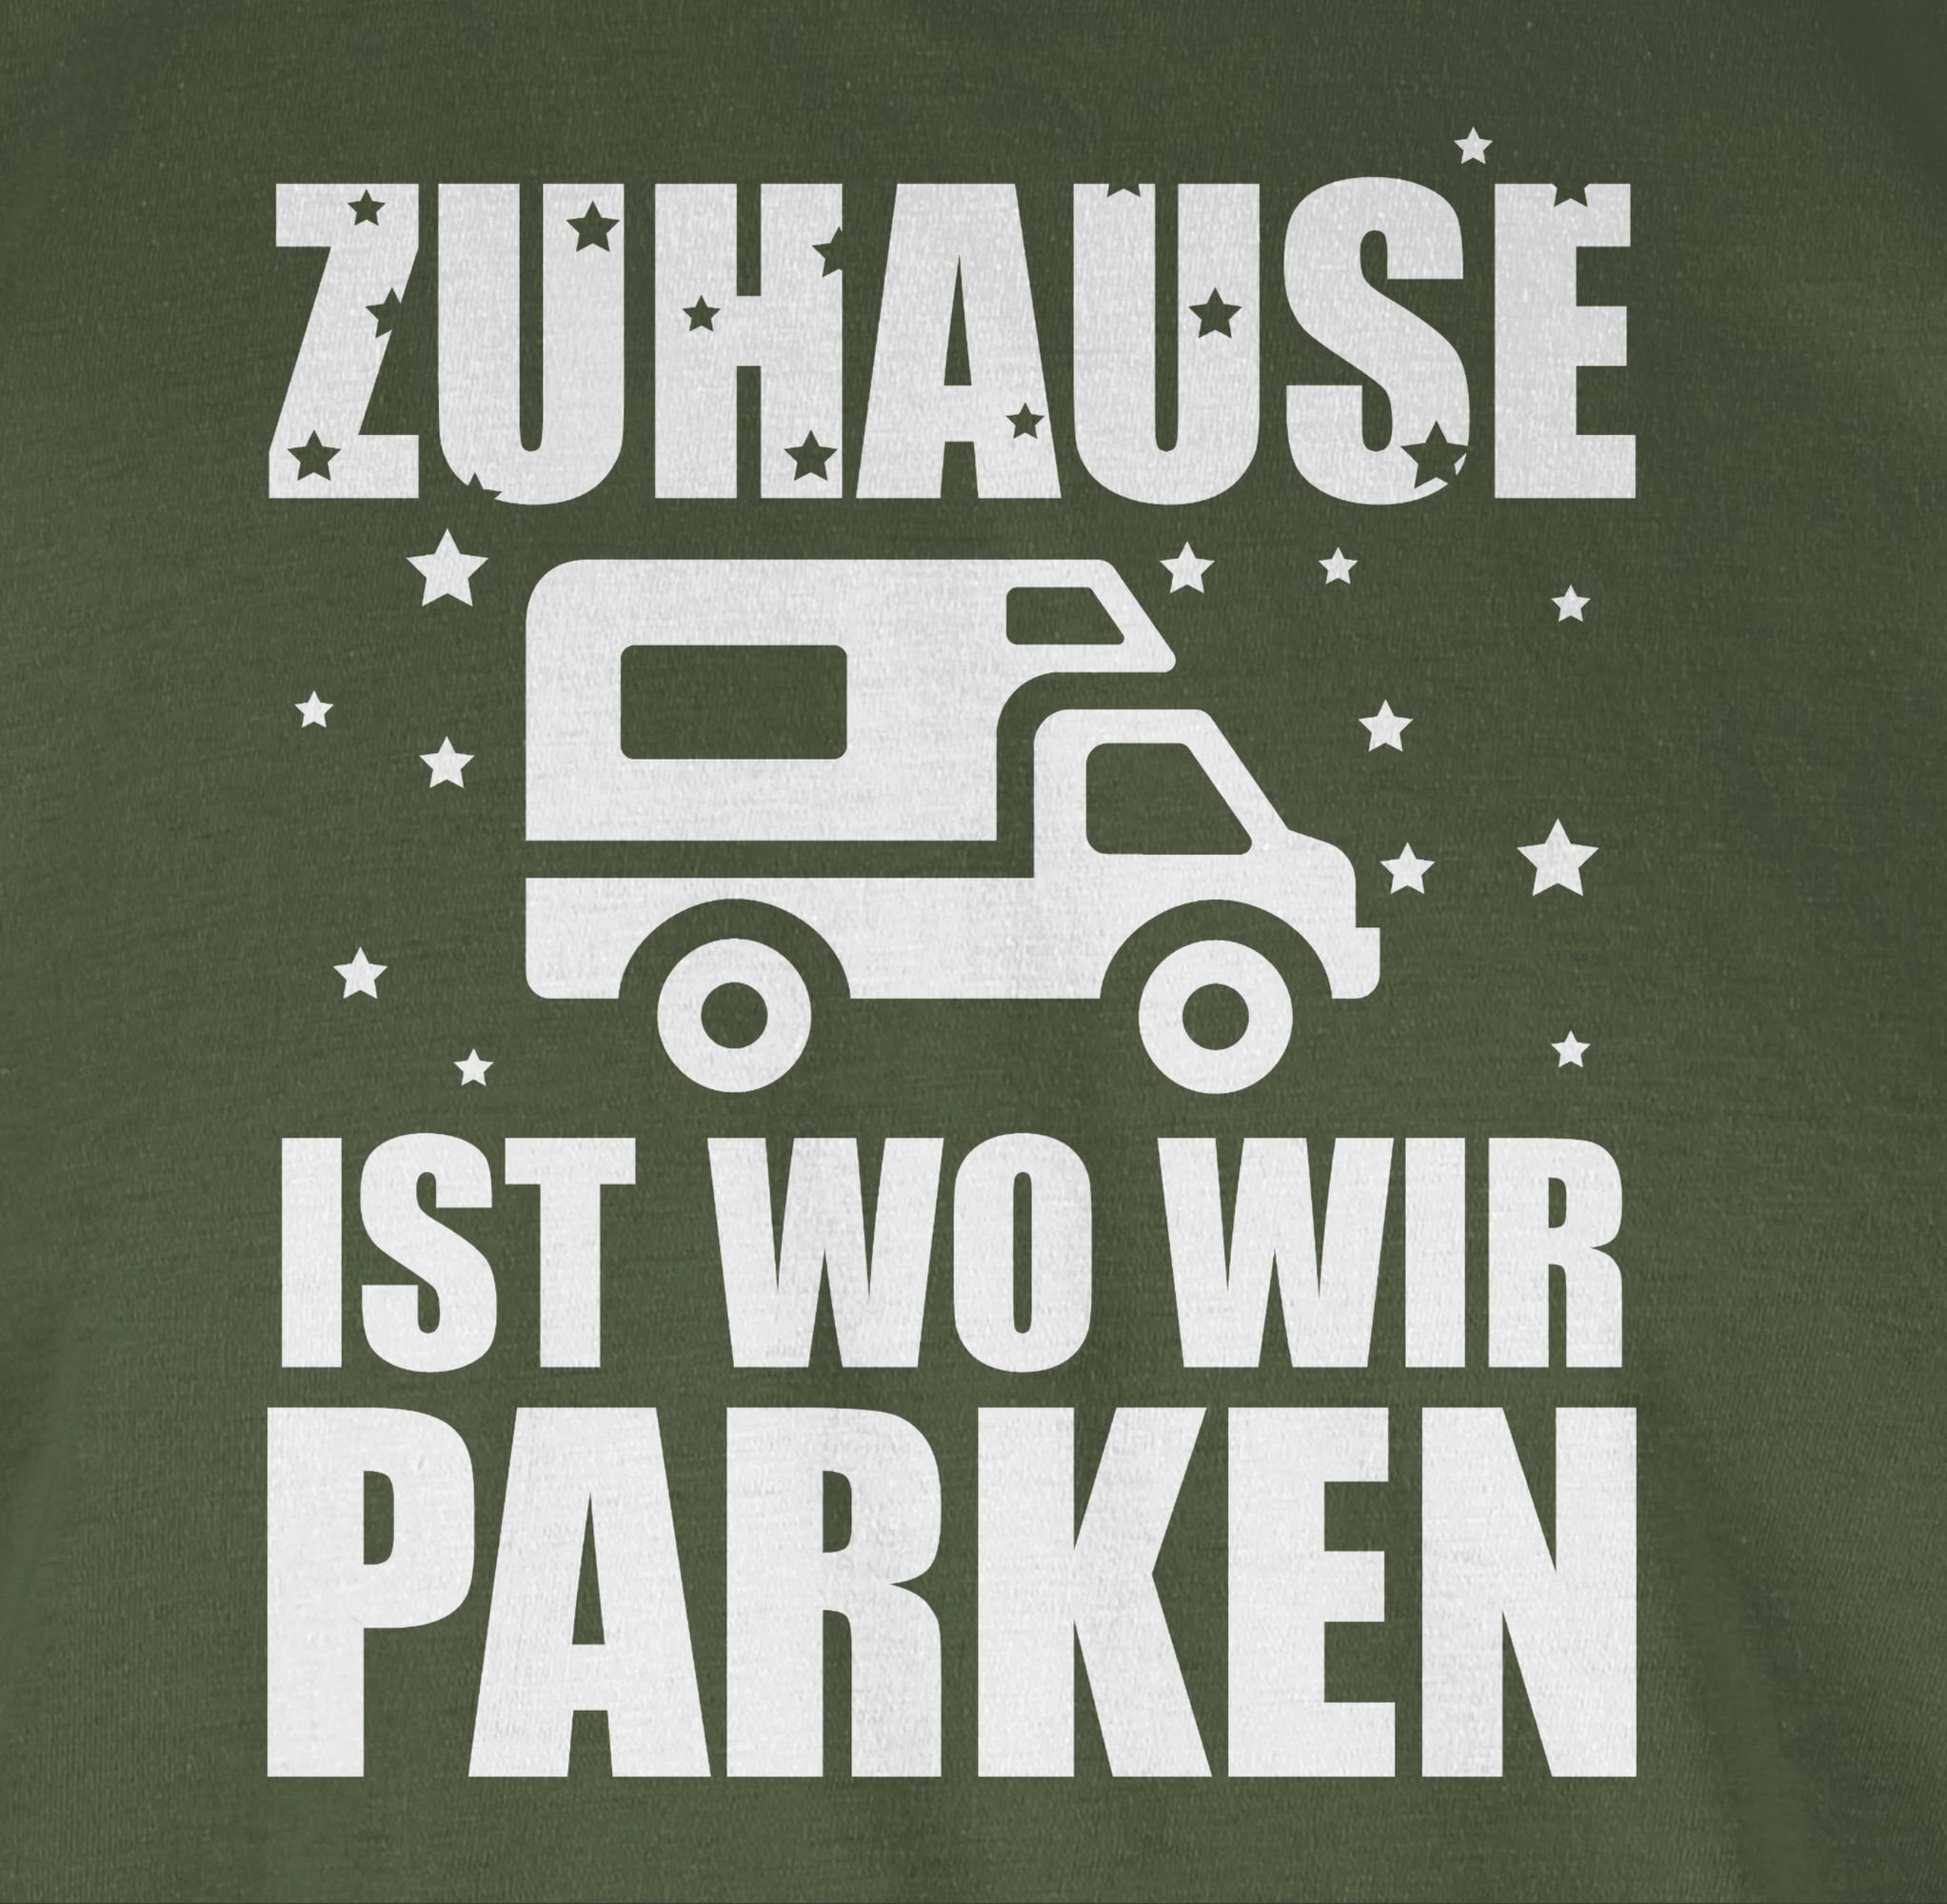 wo parken ist Shirtracer Zuhause Hobby T-Shirt weiß wir 2 - Outfit Army Grün